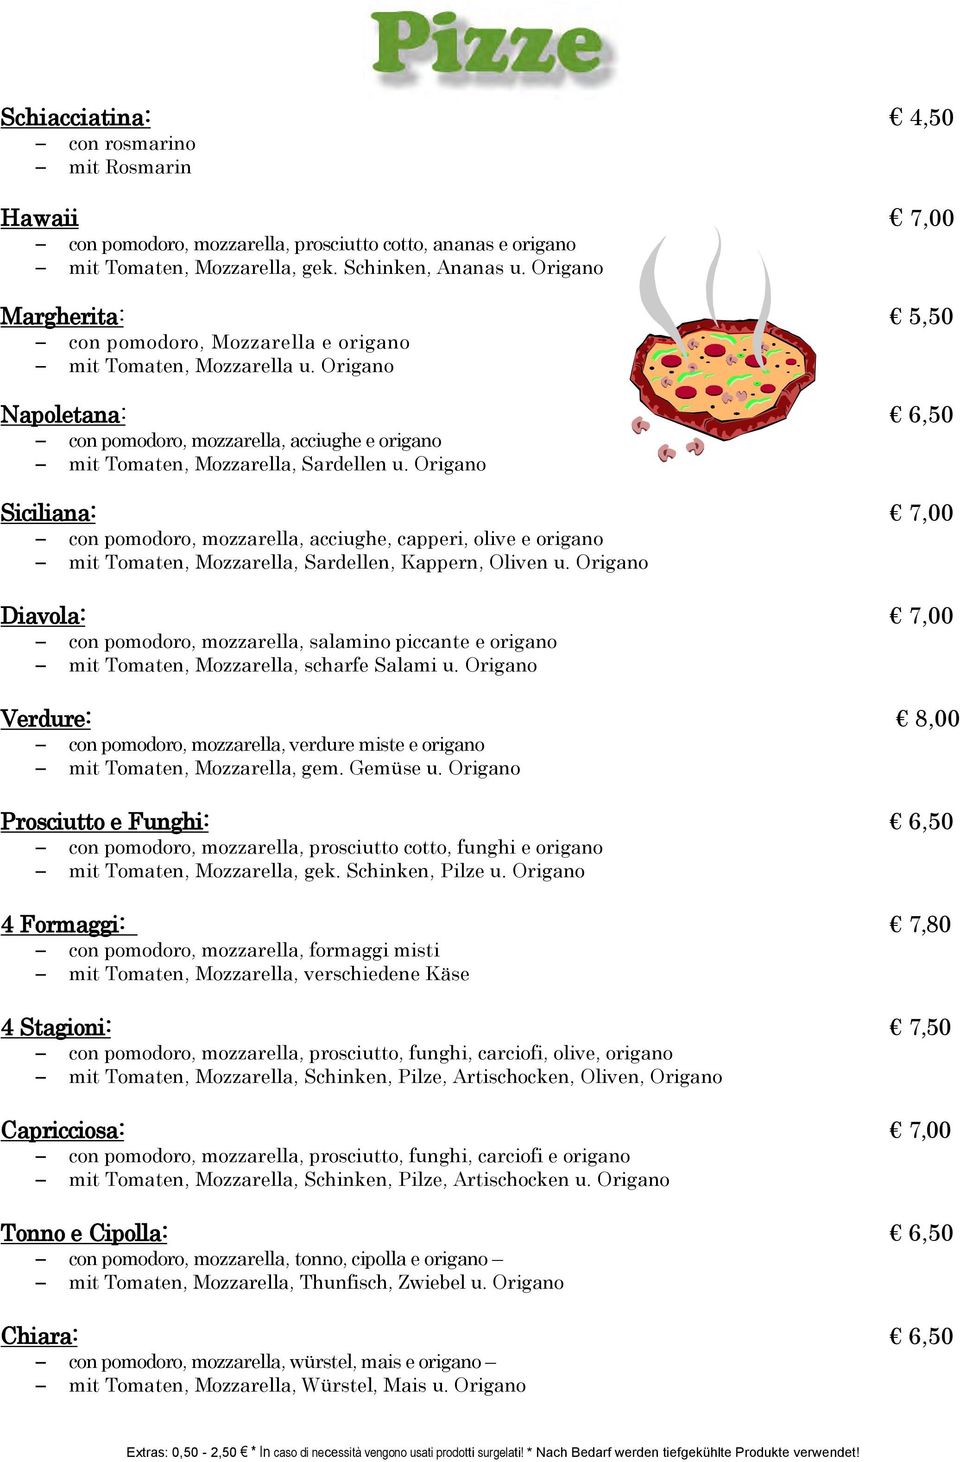 Origano Siciliana: 7,00 con pomodoro, mozzarella, acciughe, capperi, olive e origano mit Tomaten, Mozzarella, Sardellen, Kappern, Oliven u.